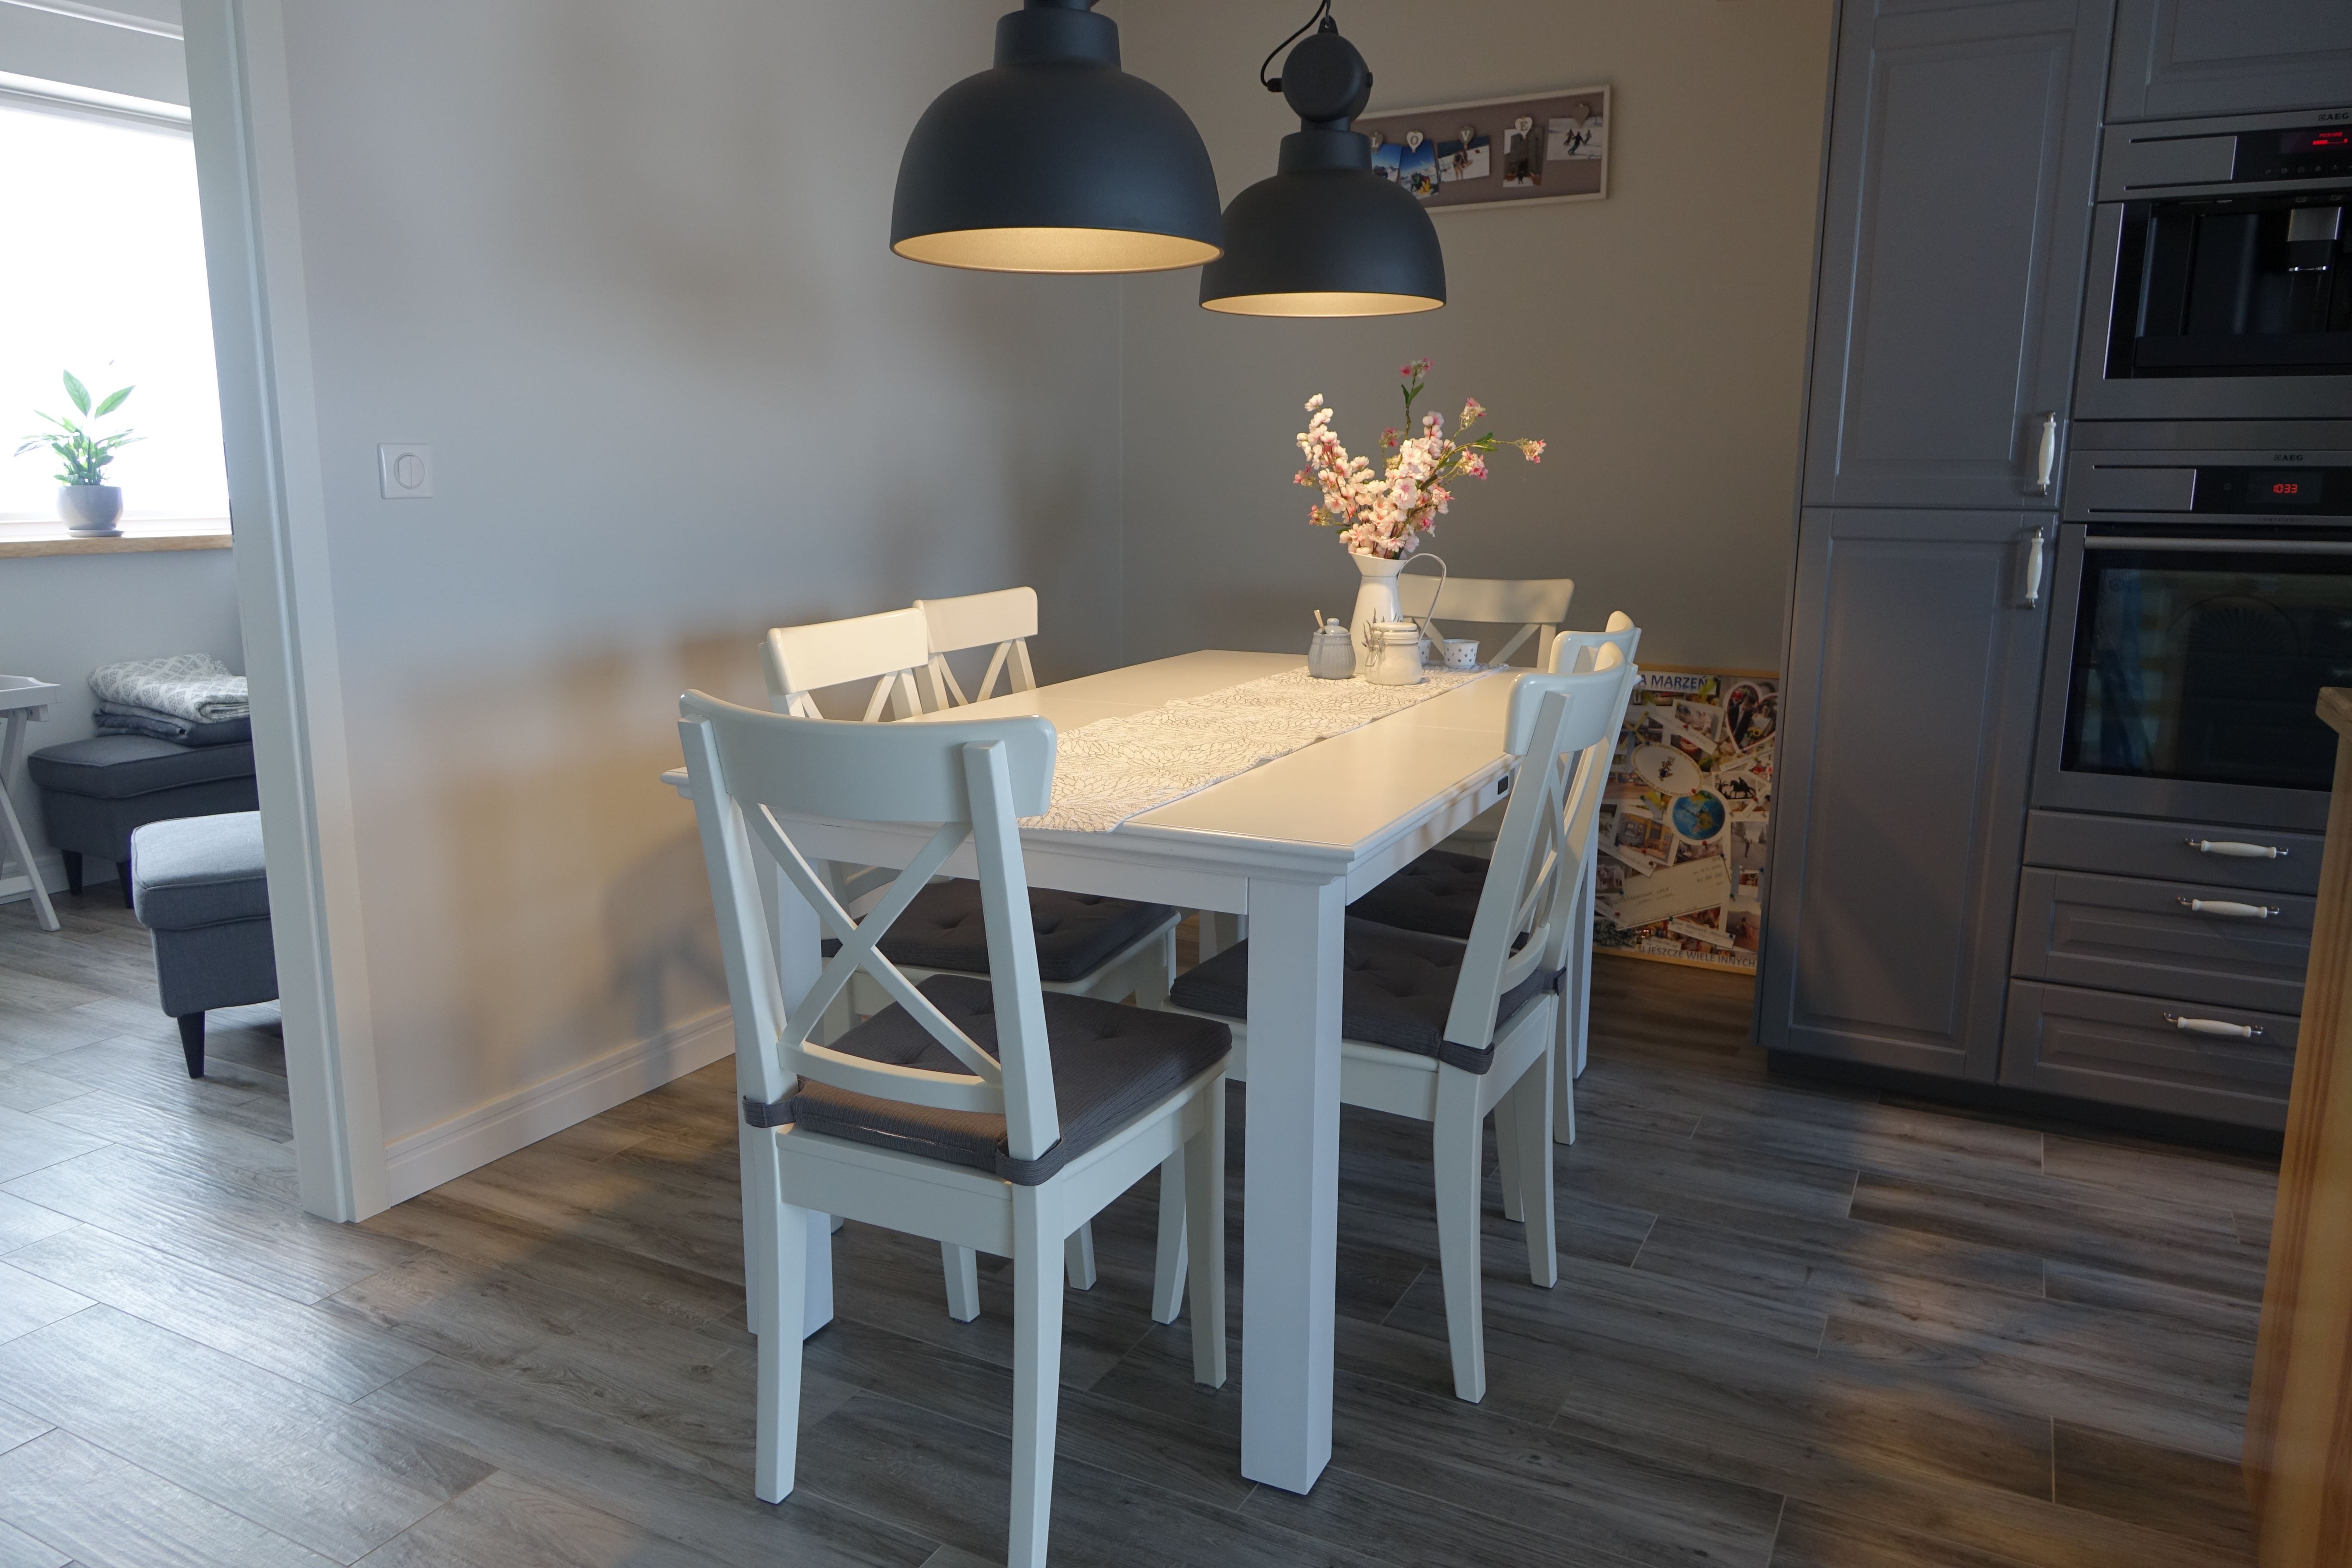 Drewniany stół i krzesła (białe, drewniane, meble).